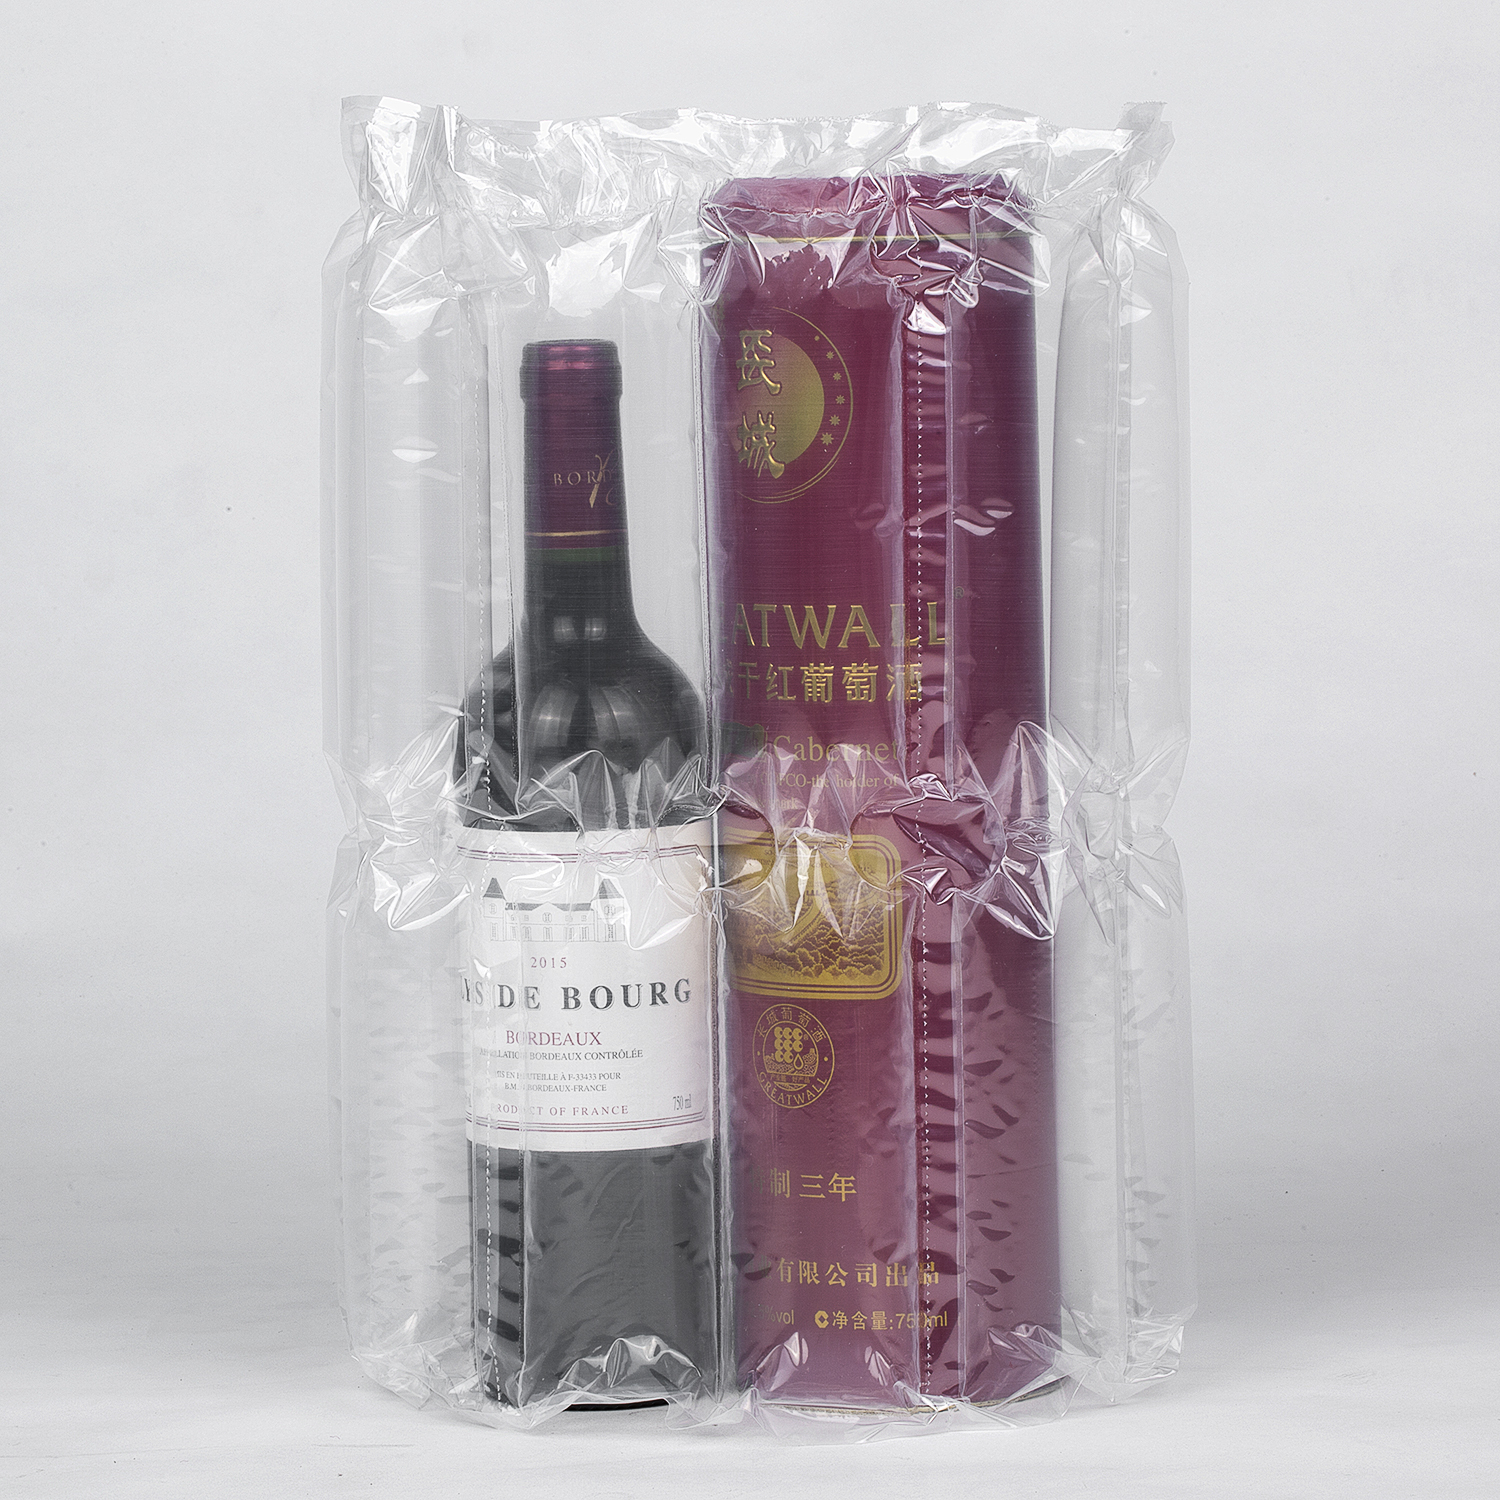 Flexible Schutzverpackungsrollen für Weinflaschen